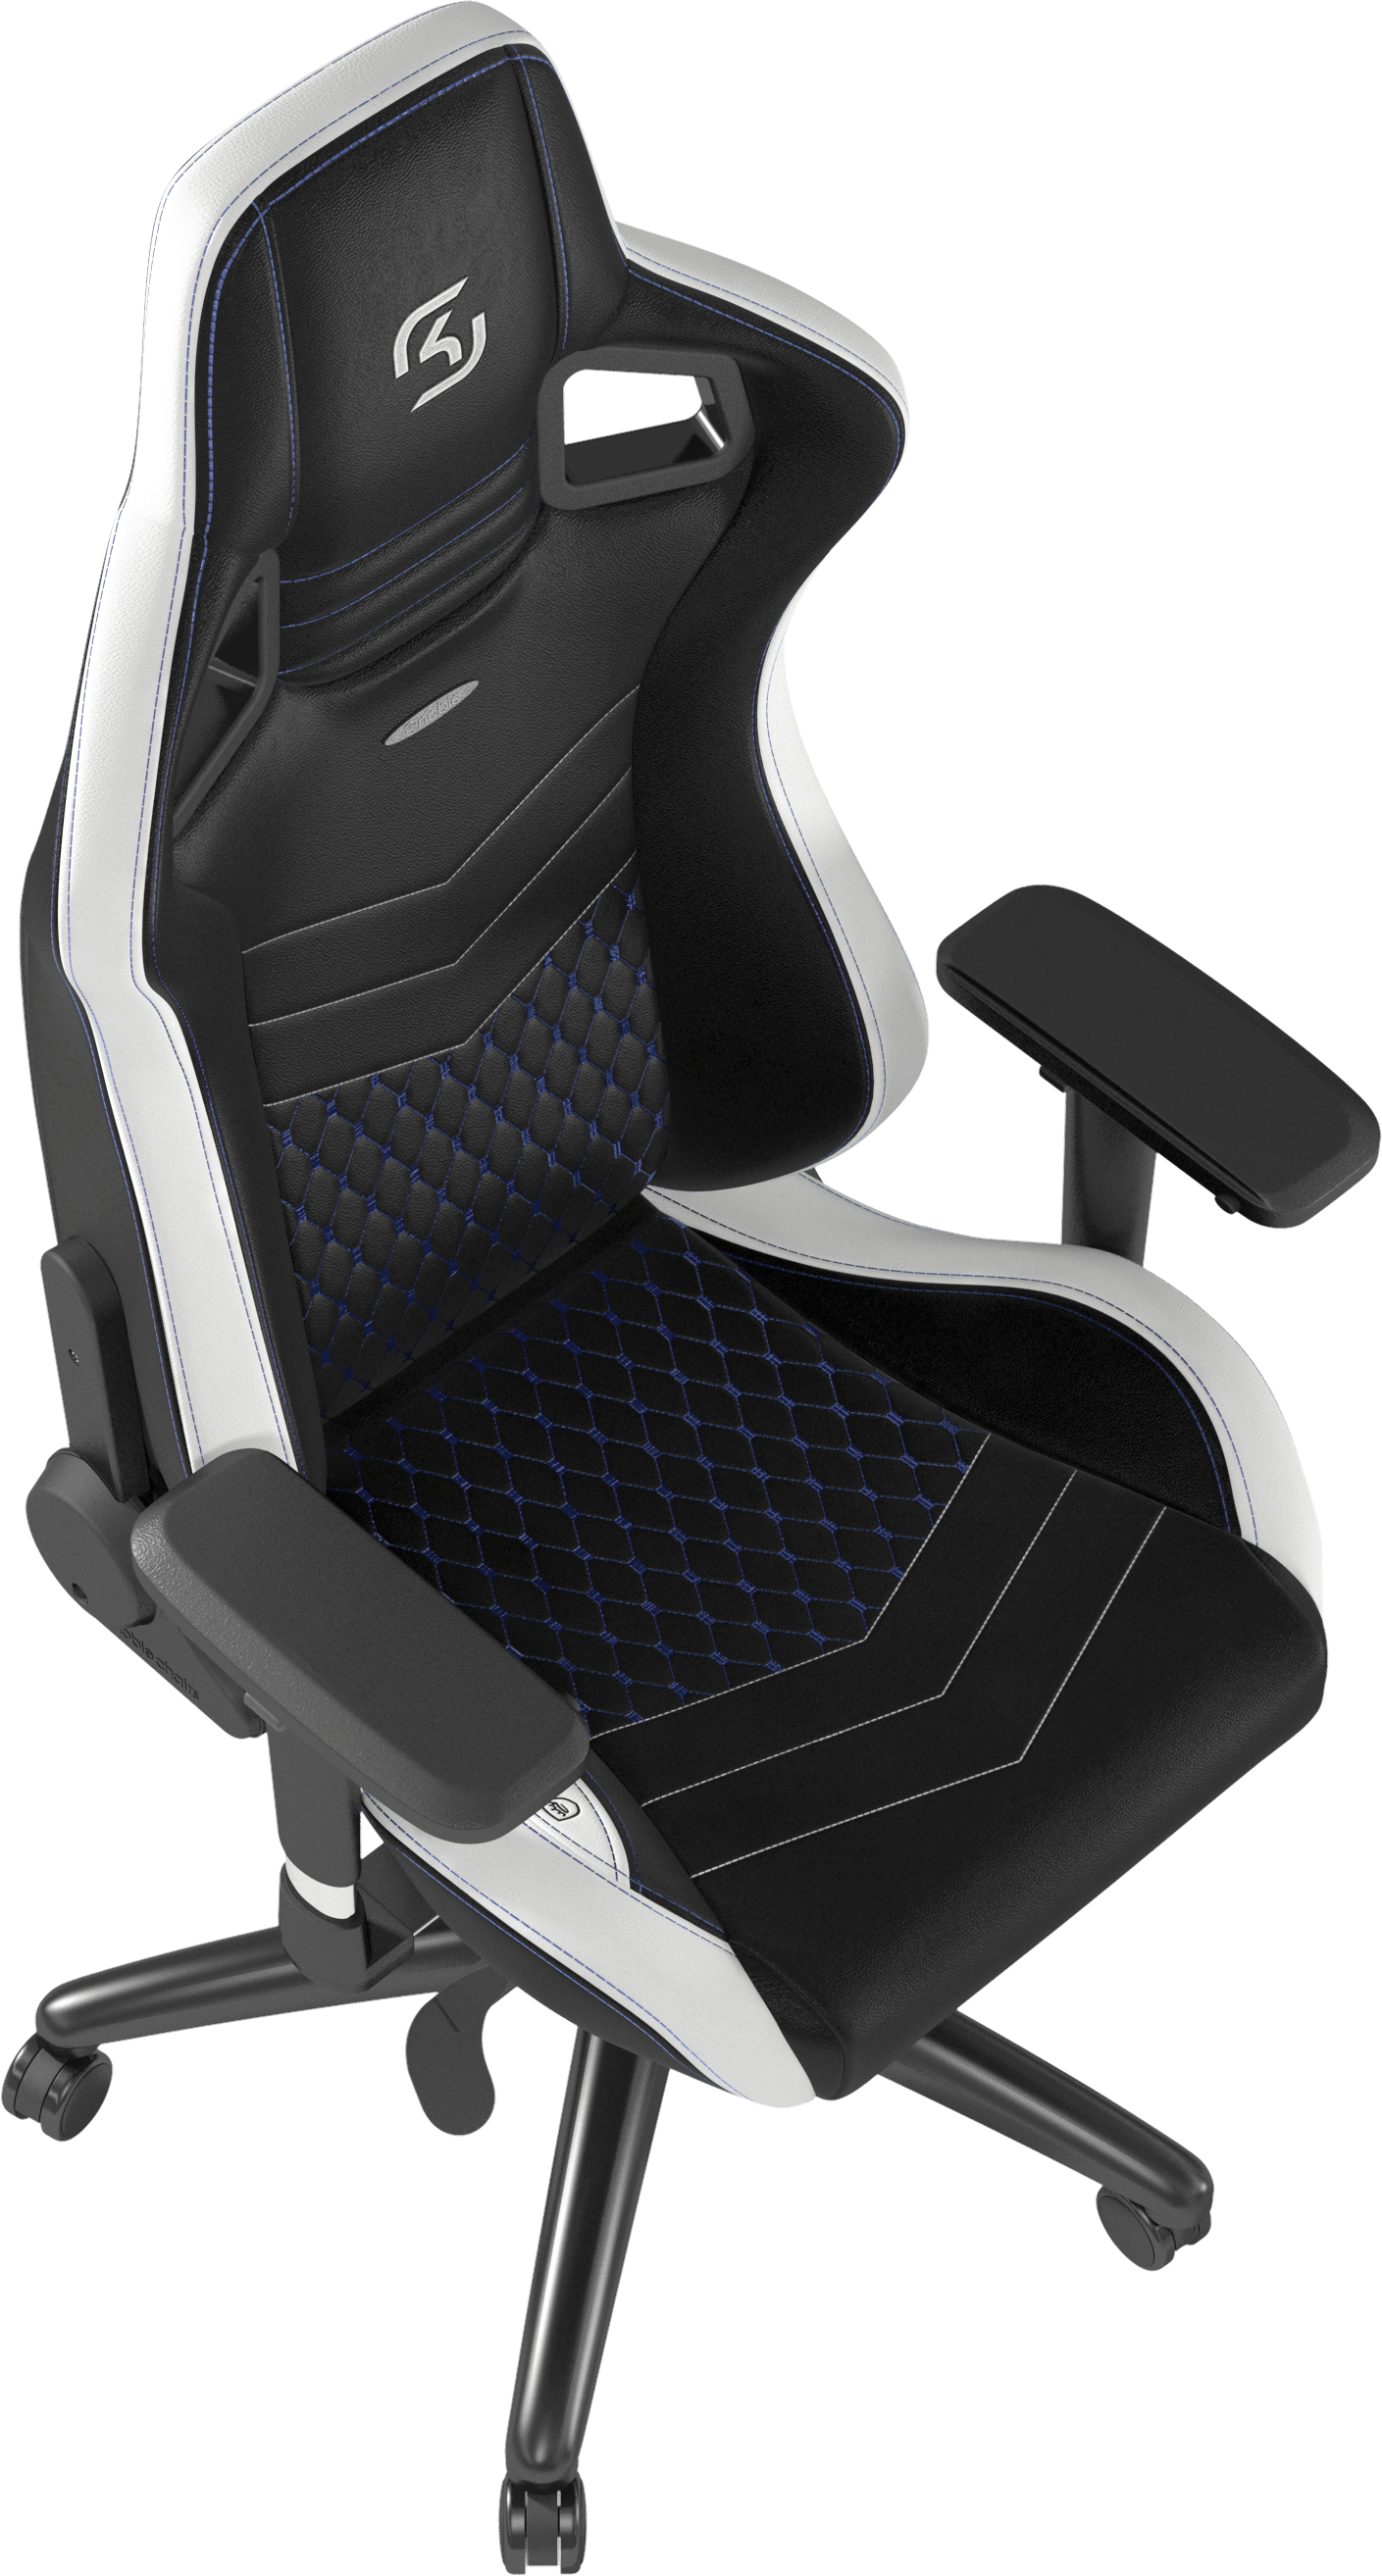 ergonomic design EPIC SK Gaming Edition